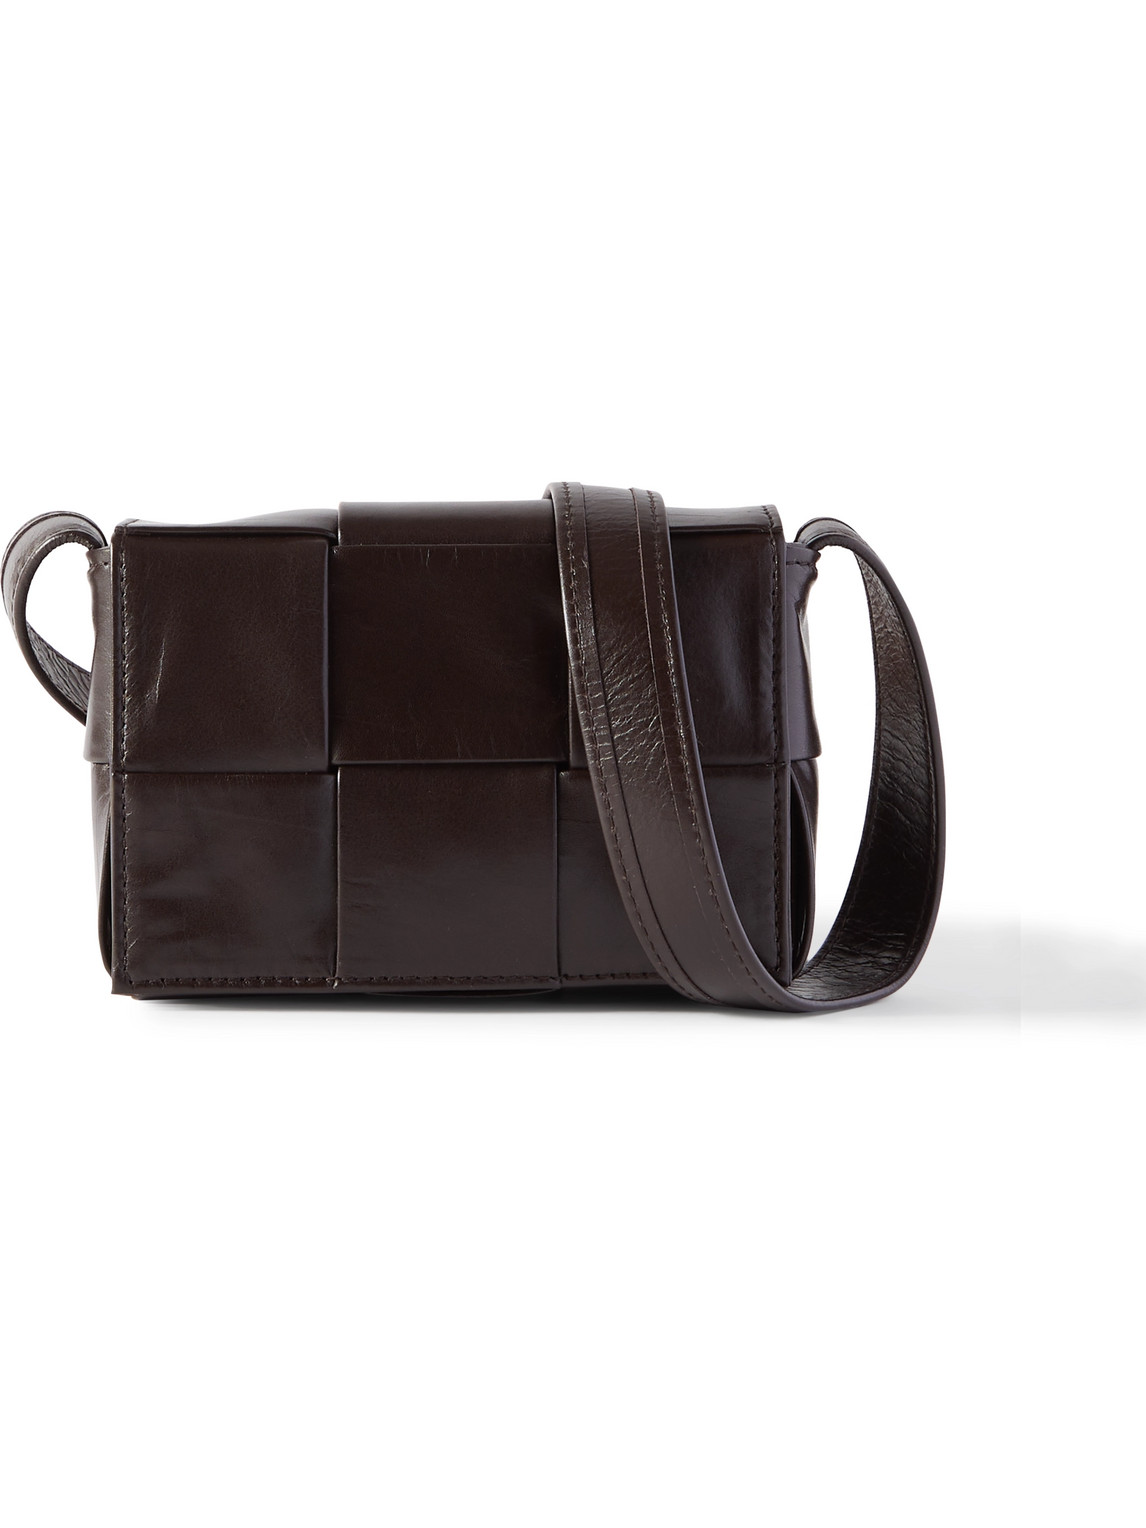 Bottega Veneta Intrecciato Leather Messenger Bag In Brown